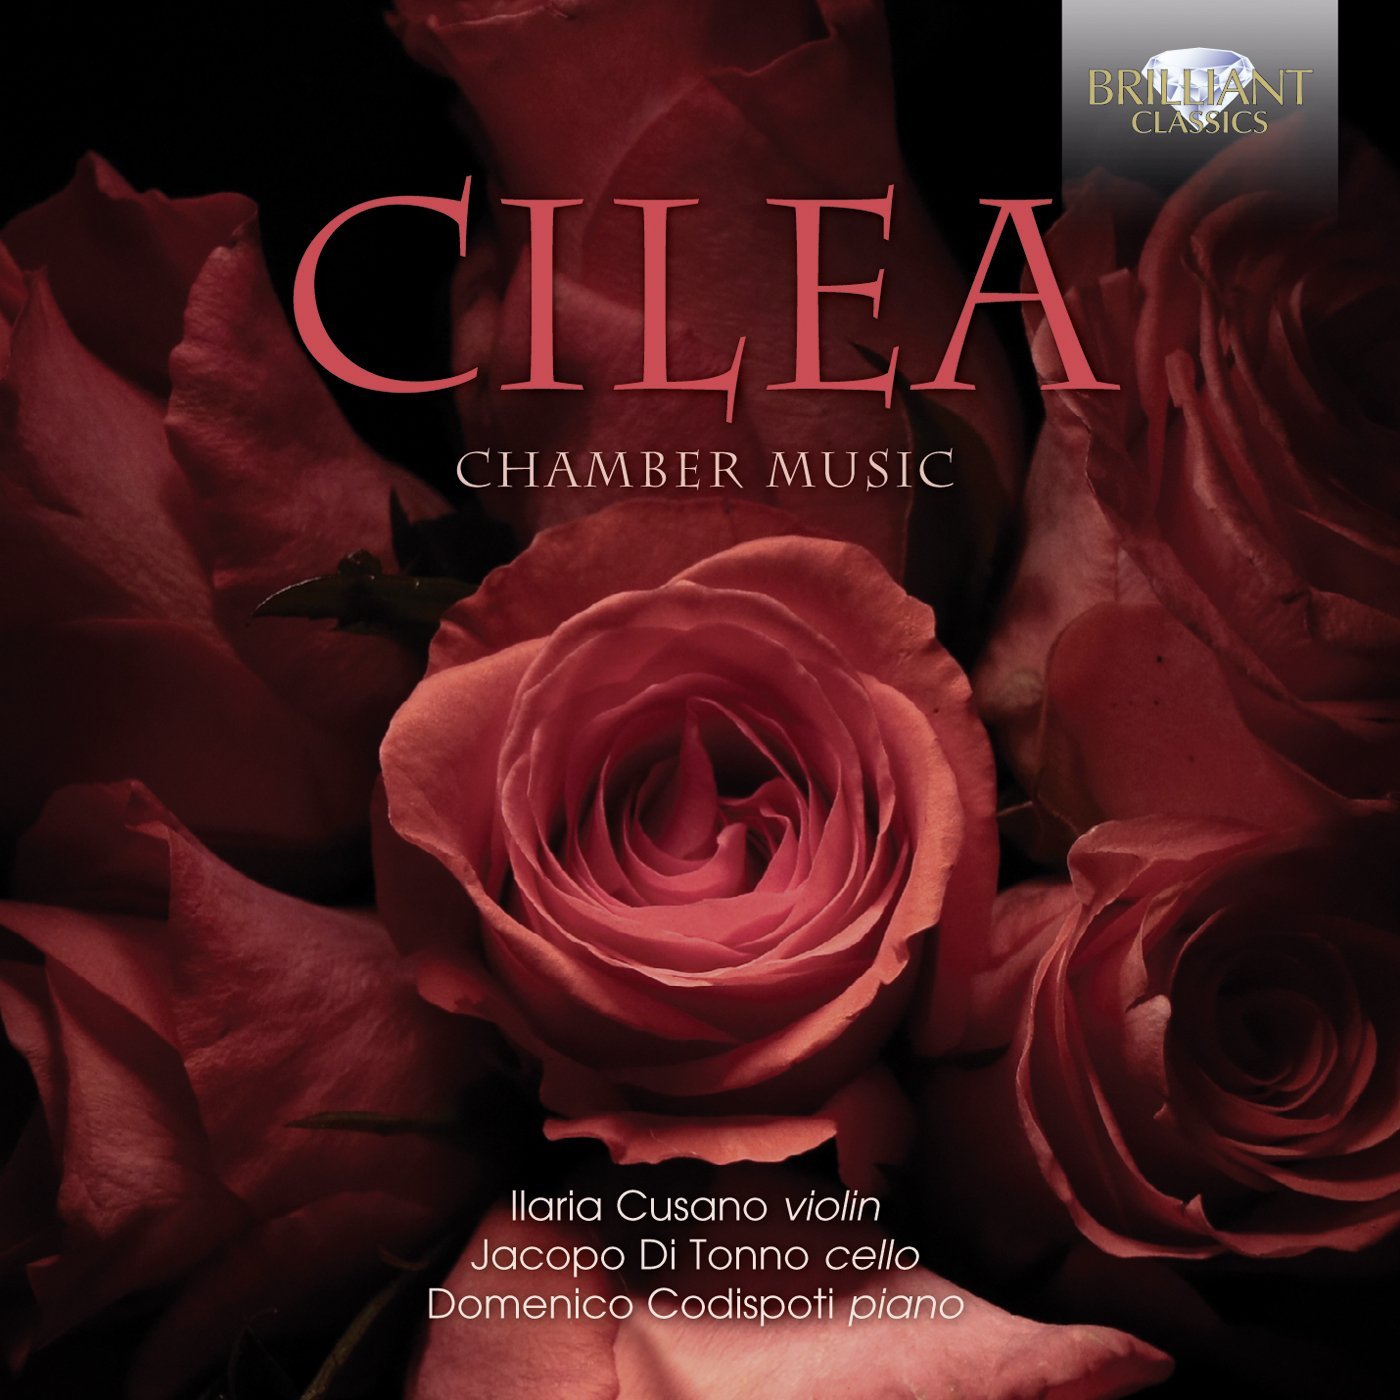 Francesco Cilea: Chamber Music / Ilaria Cusano, violin; Jacopo Di Tonno, cello, Domenico Codispoti, piano